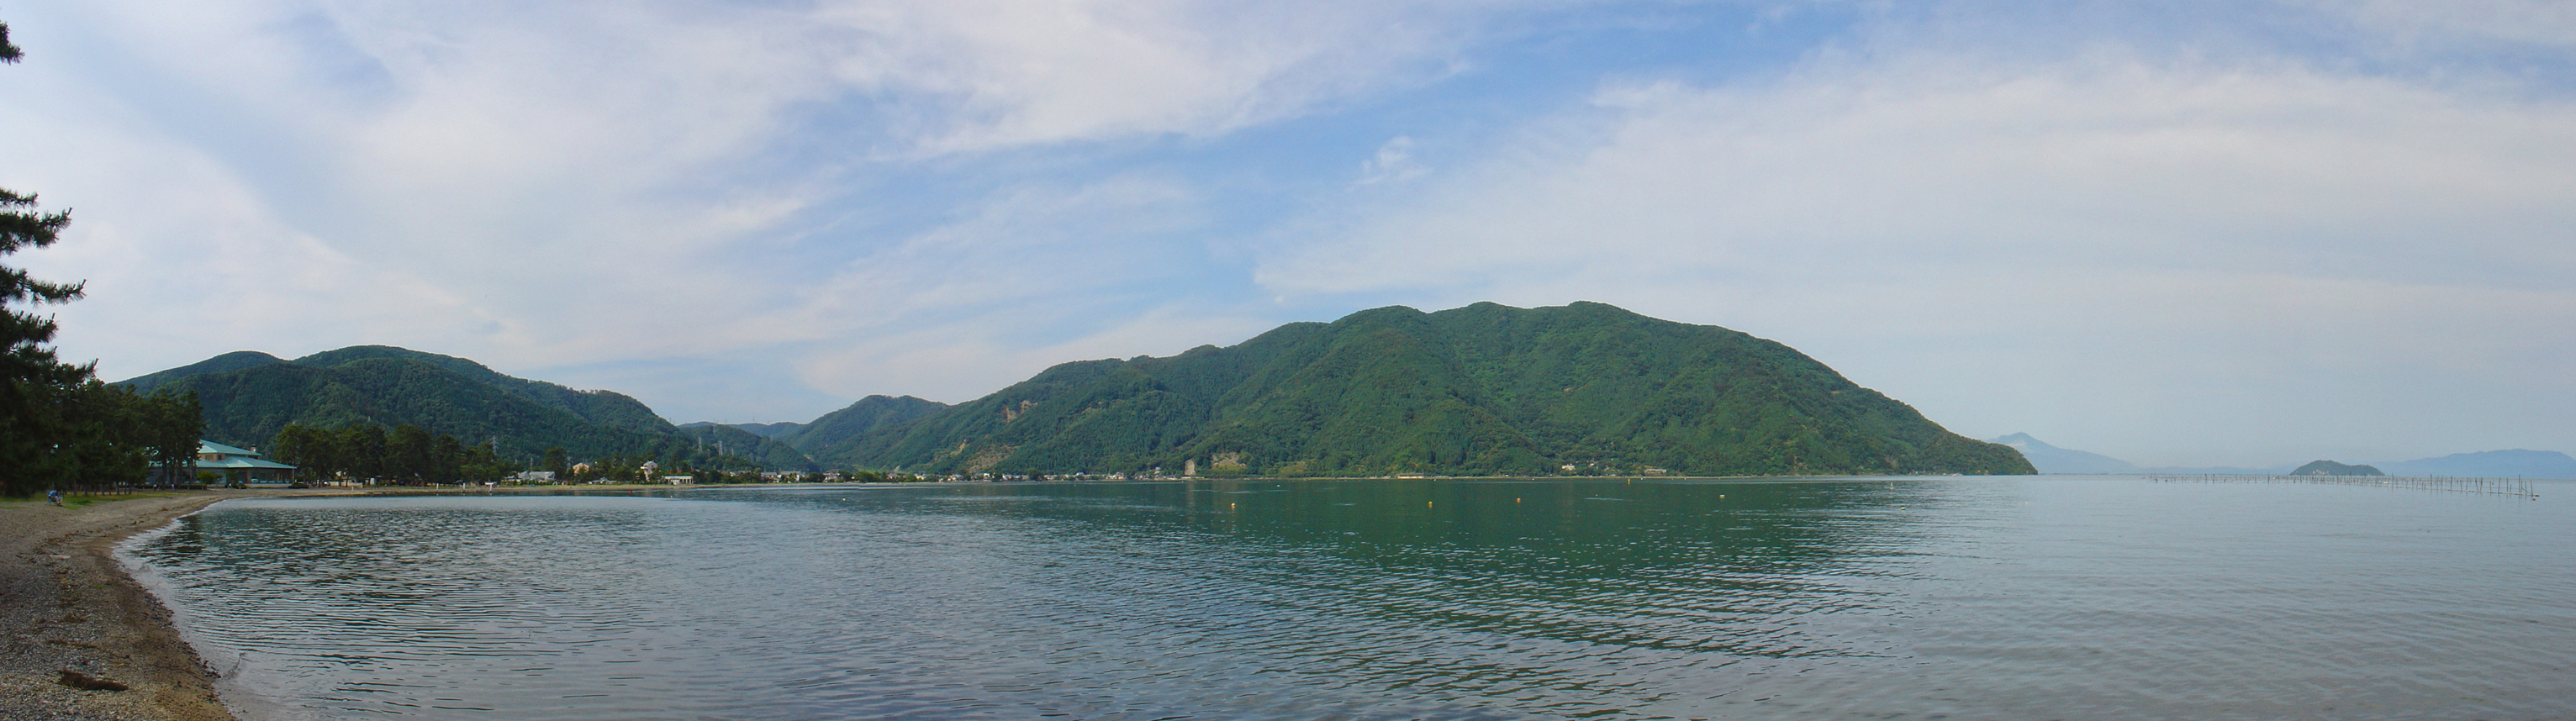 Biwa Lake (琵琶湖) Panorama II